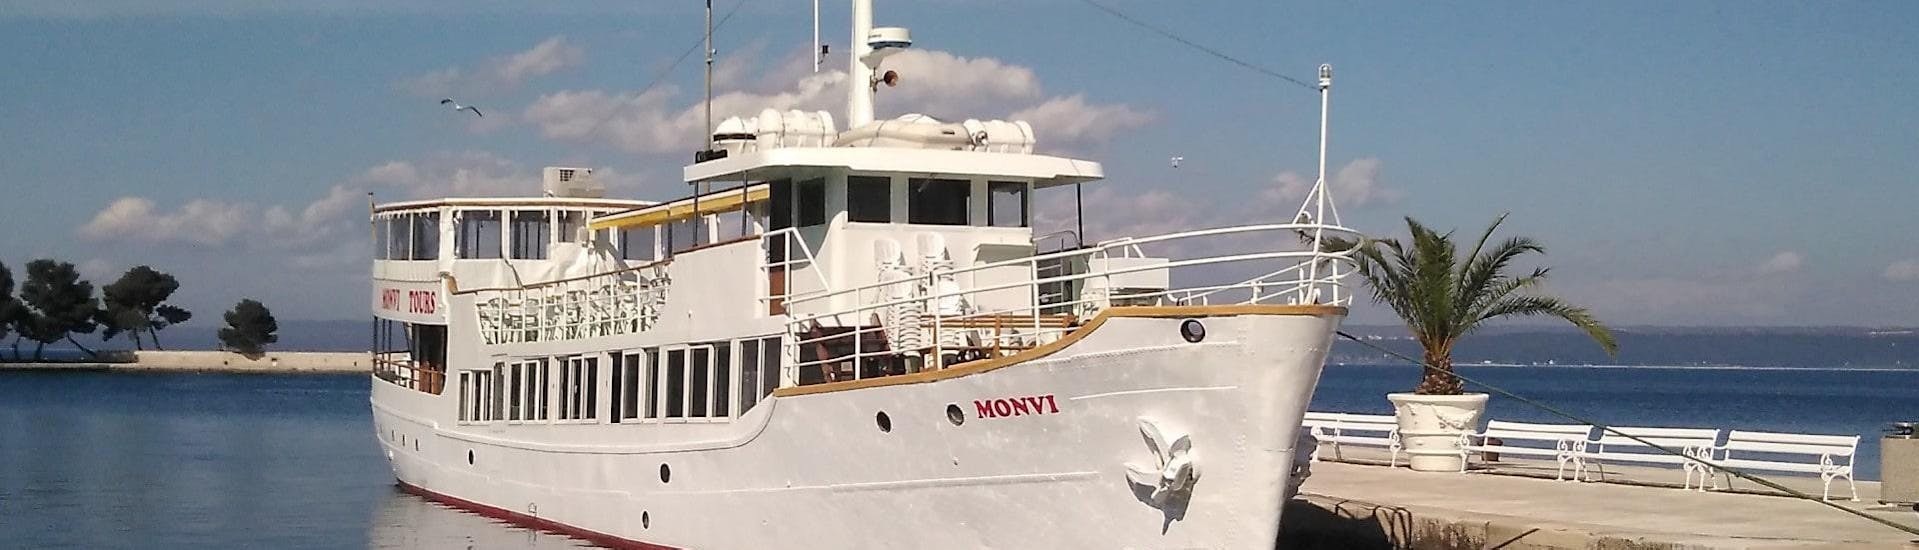 Ein Bild des Bootes von Monvi Tours Poreč, wie es im Hafen von Poreč ankert.